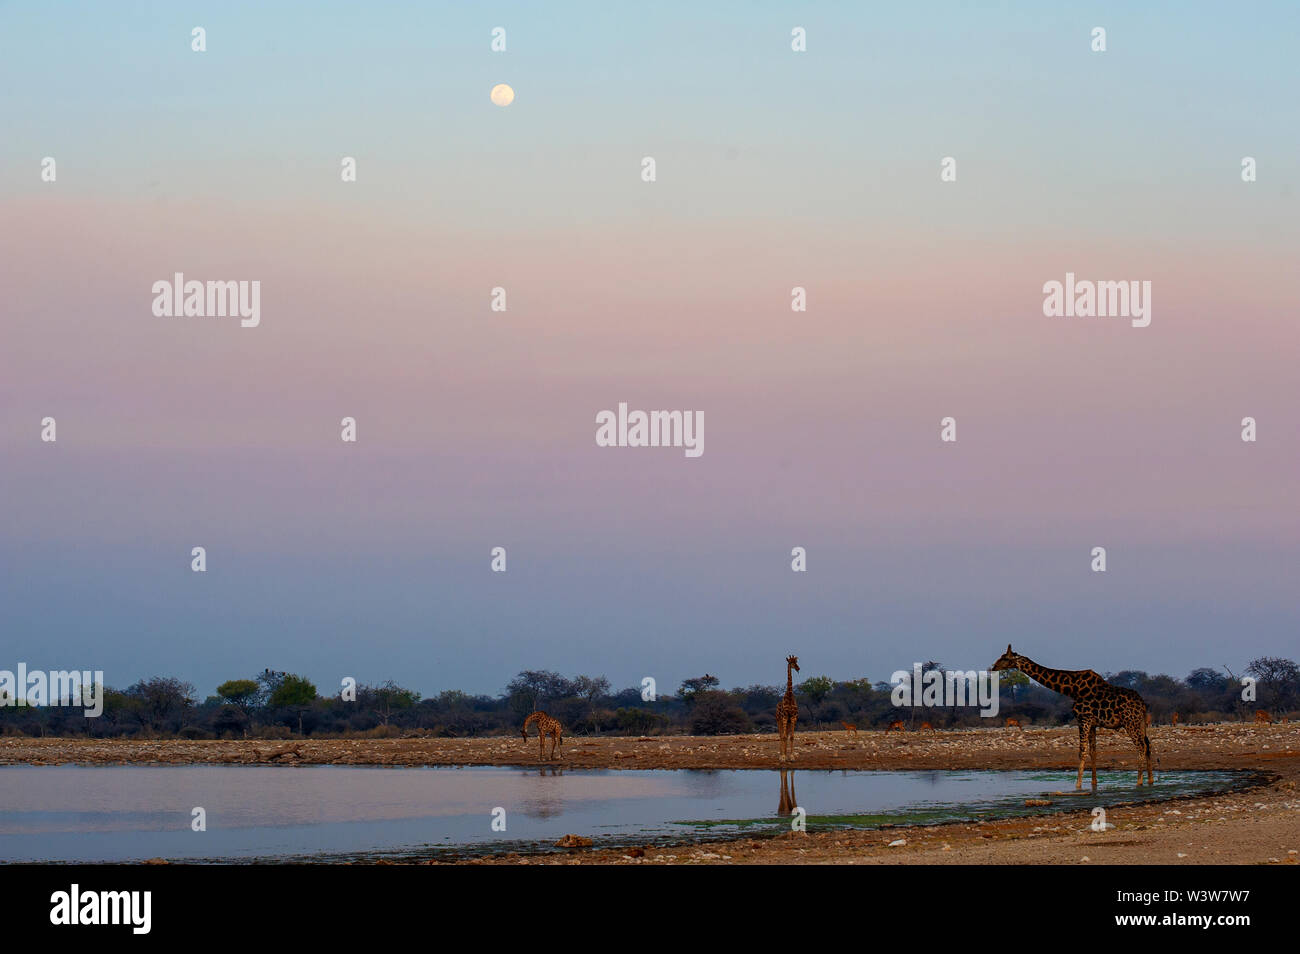 Giraffes at Klein Namutoni waterhole, Etosha Park, Namibia Stock Photo